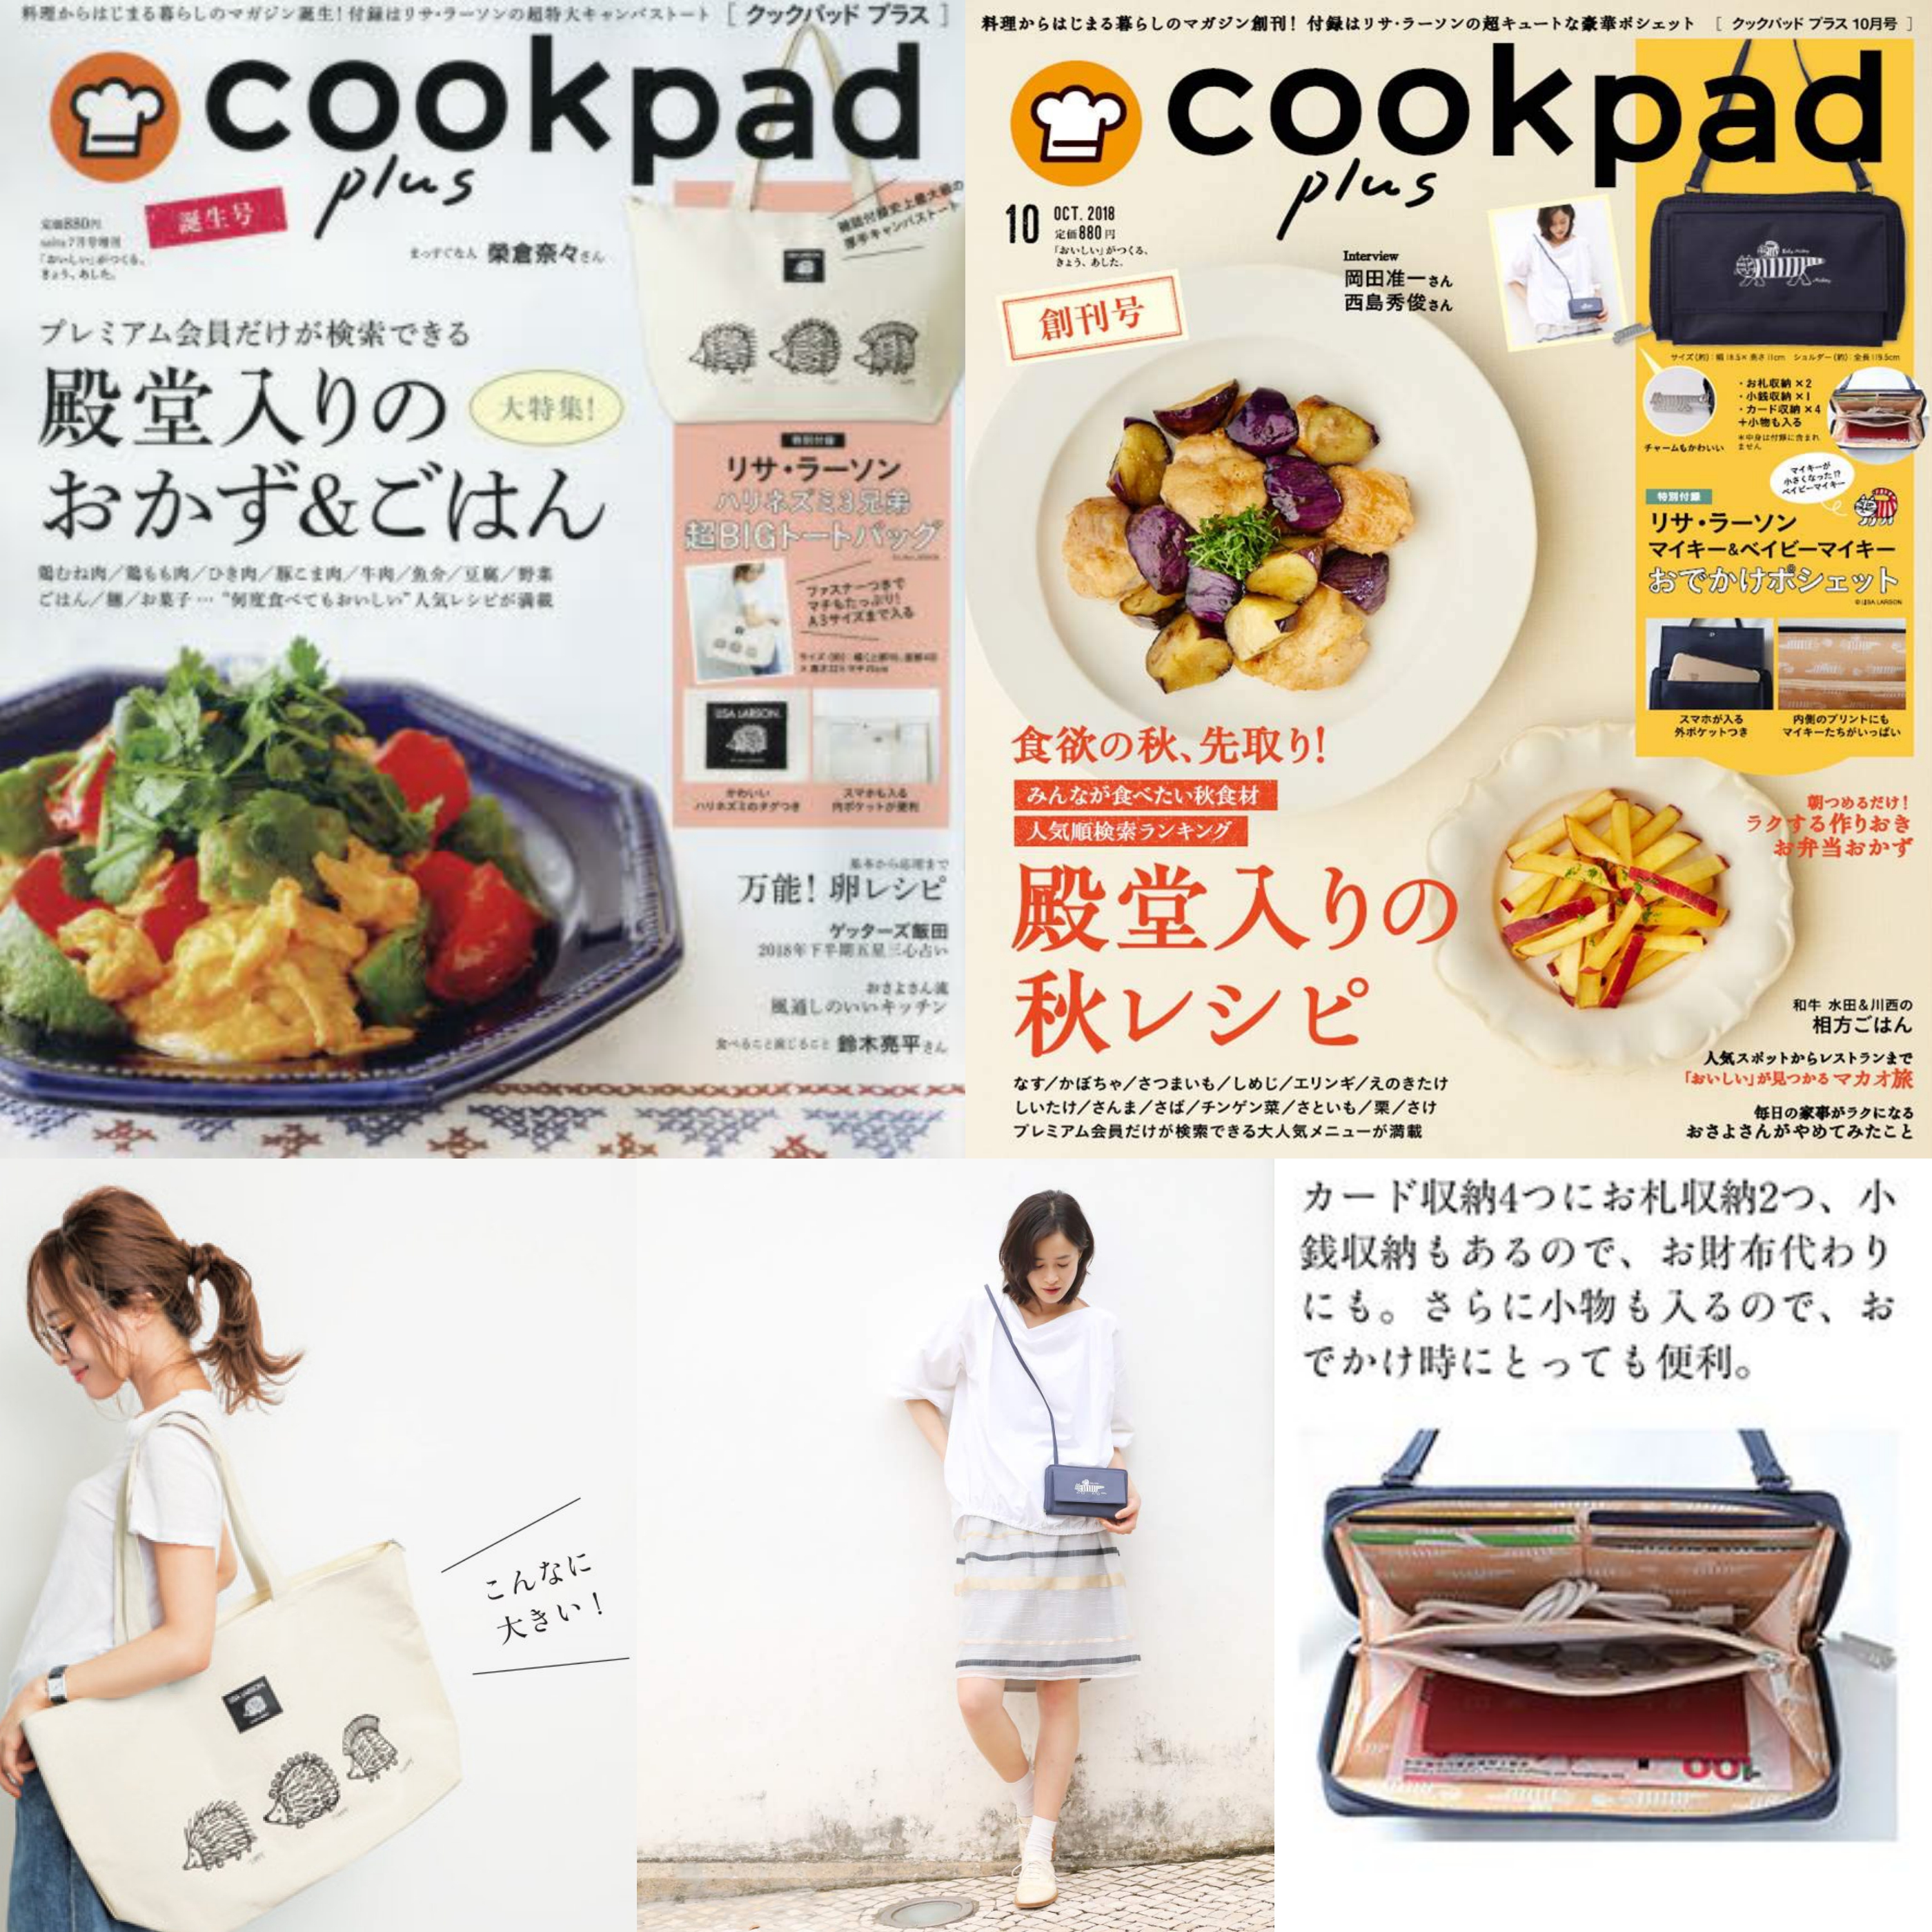 cookpadplus.jpg